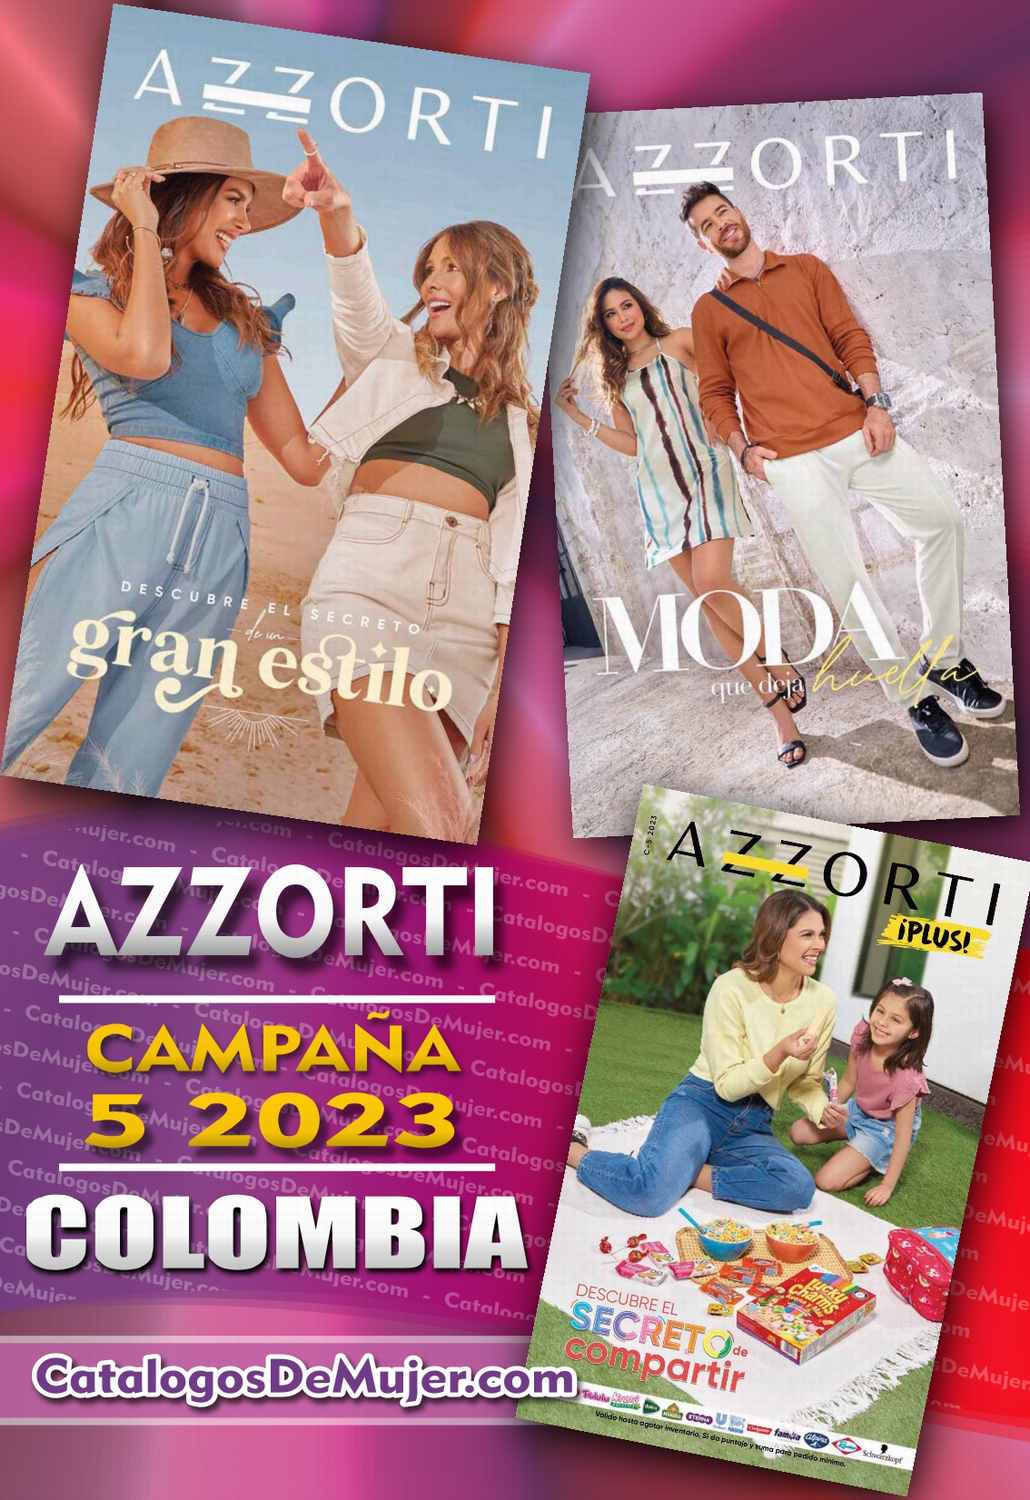 azzorti campaña 5 2023 colombia